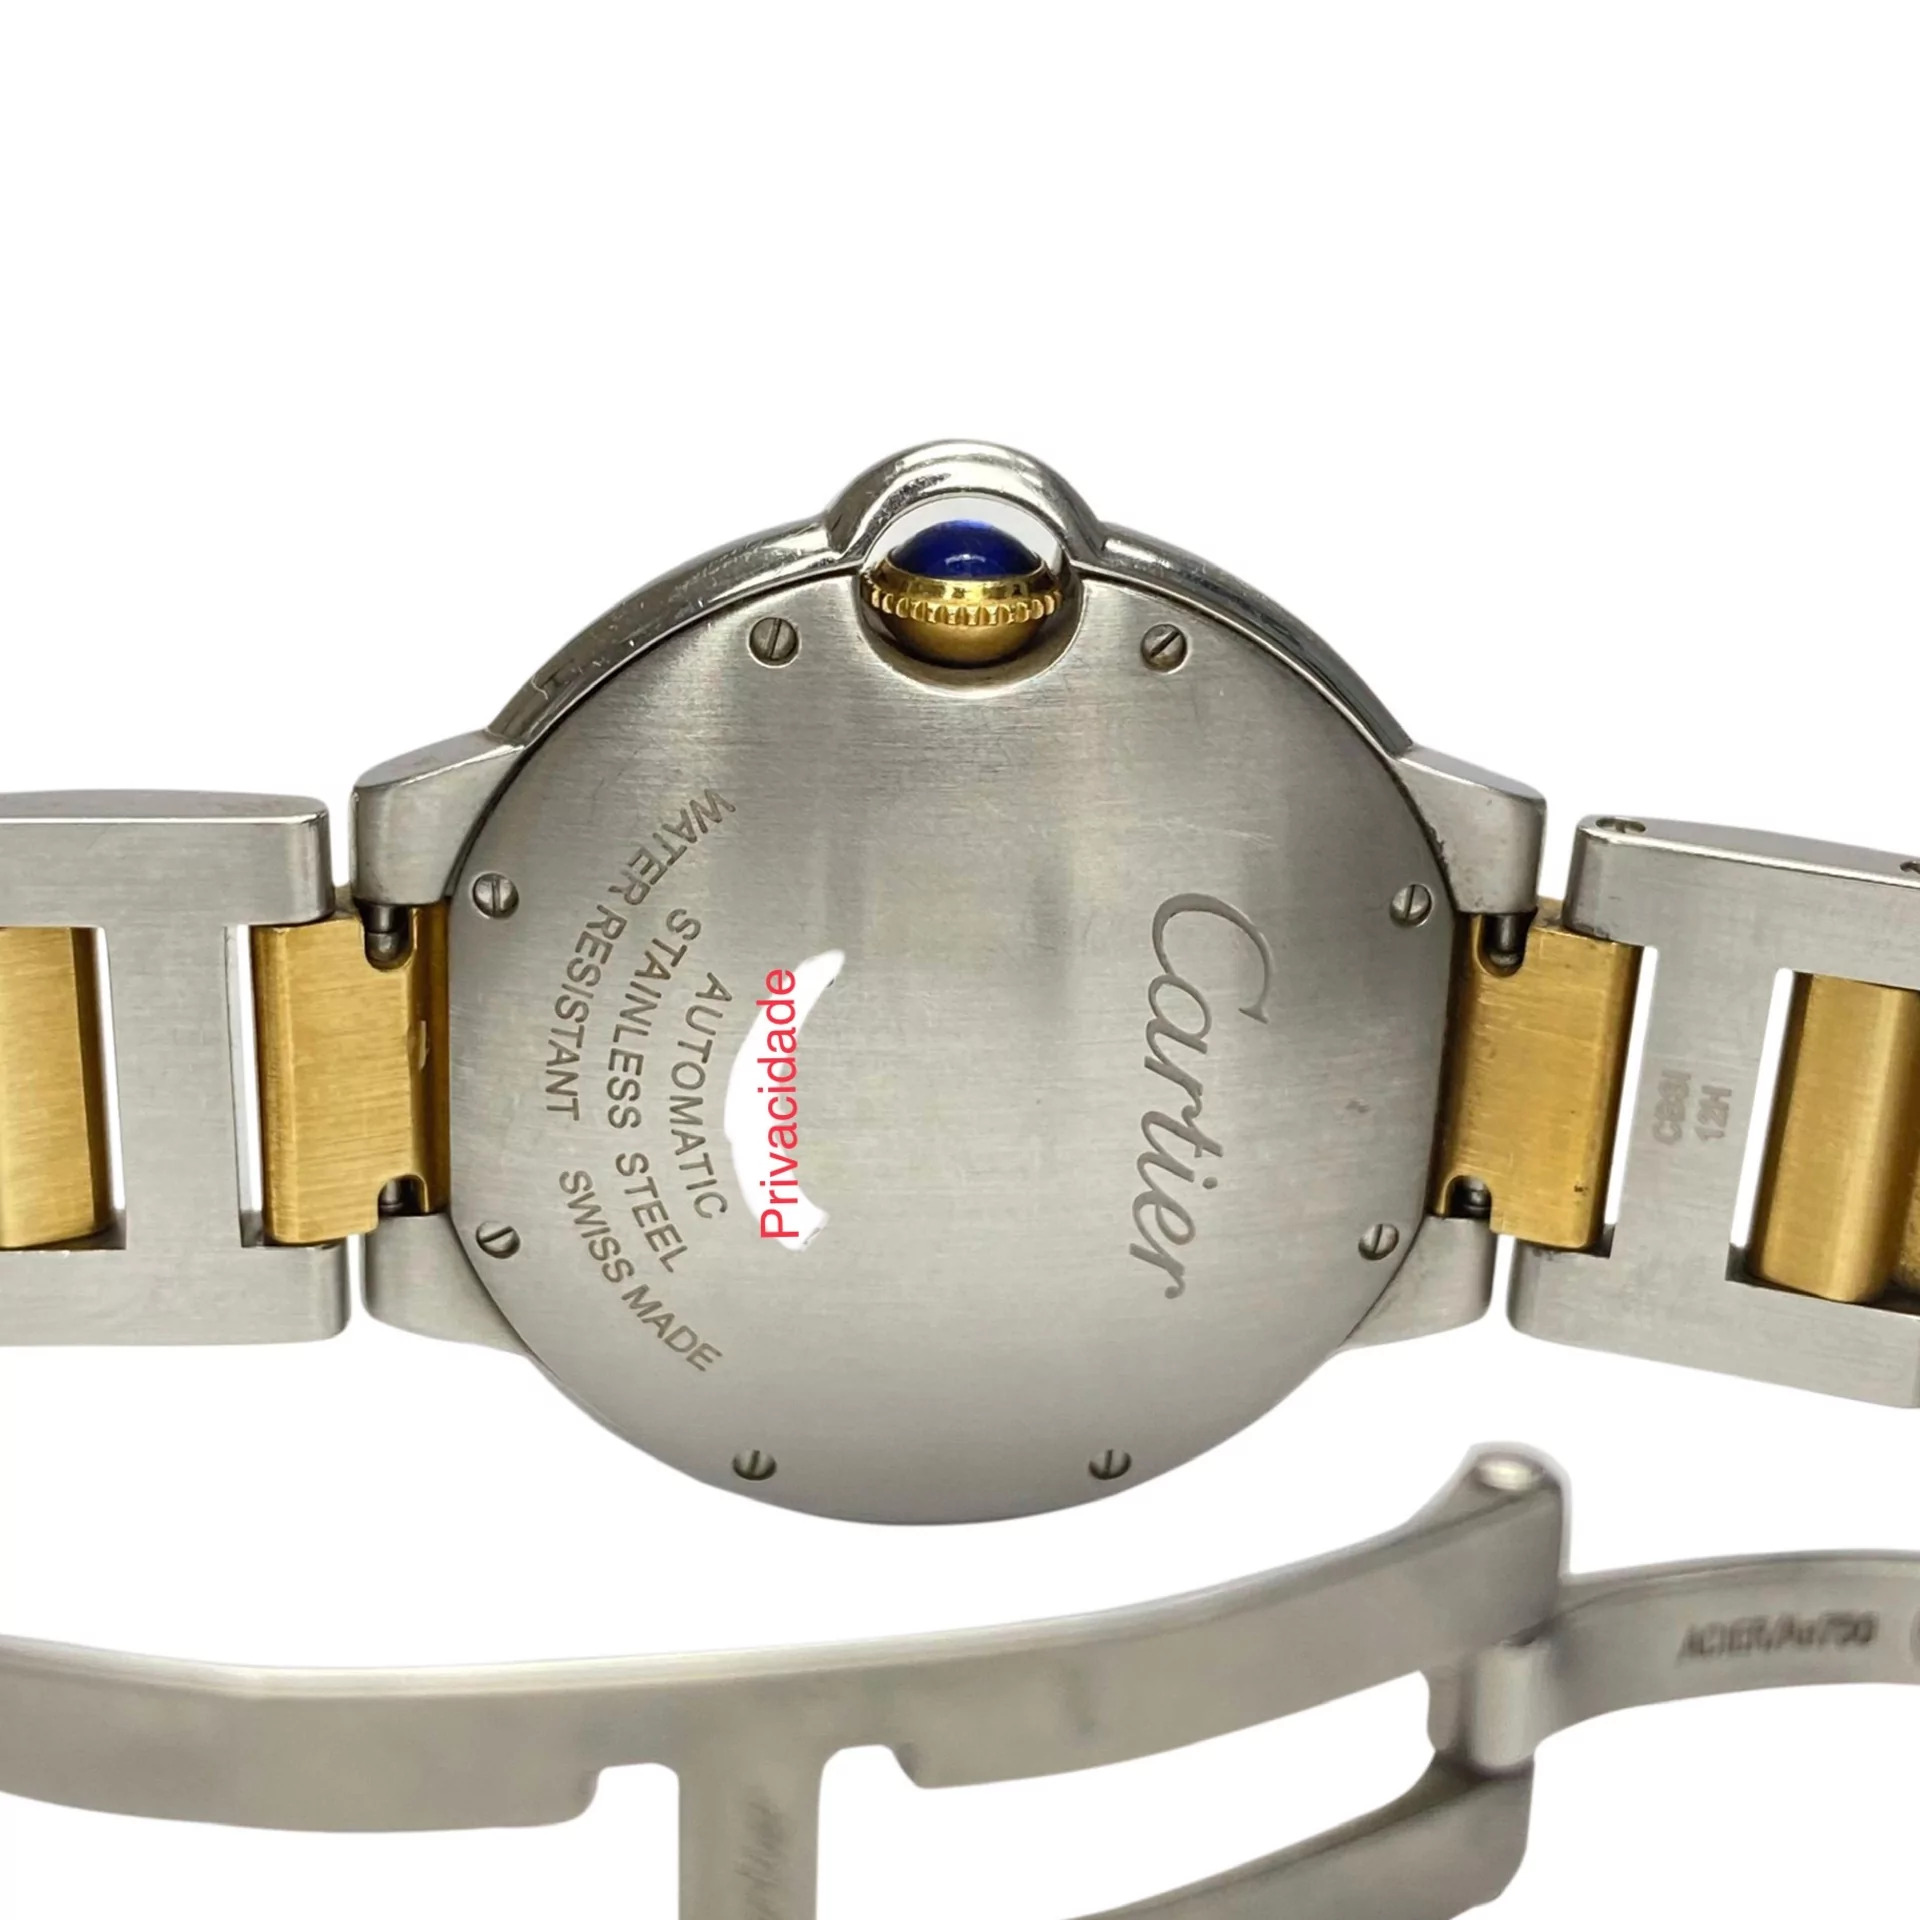 Relógio Cartier Ballon Bleu De Cartier - 36 mm